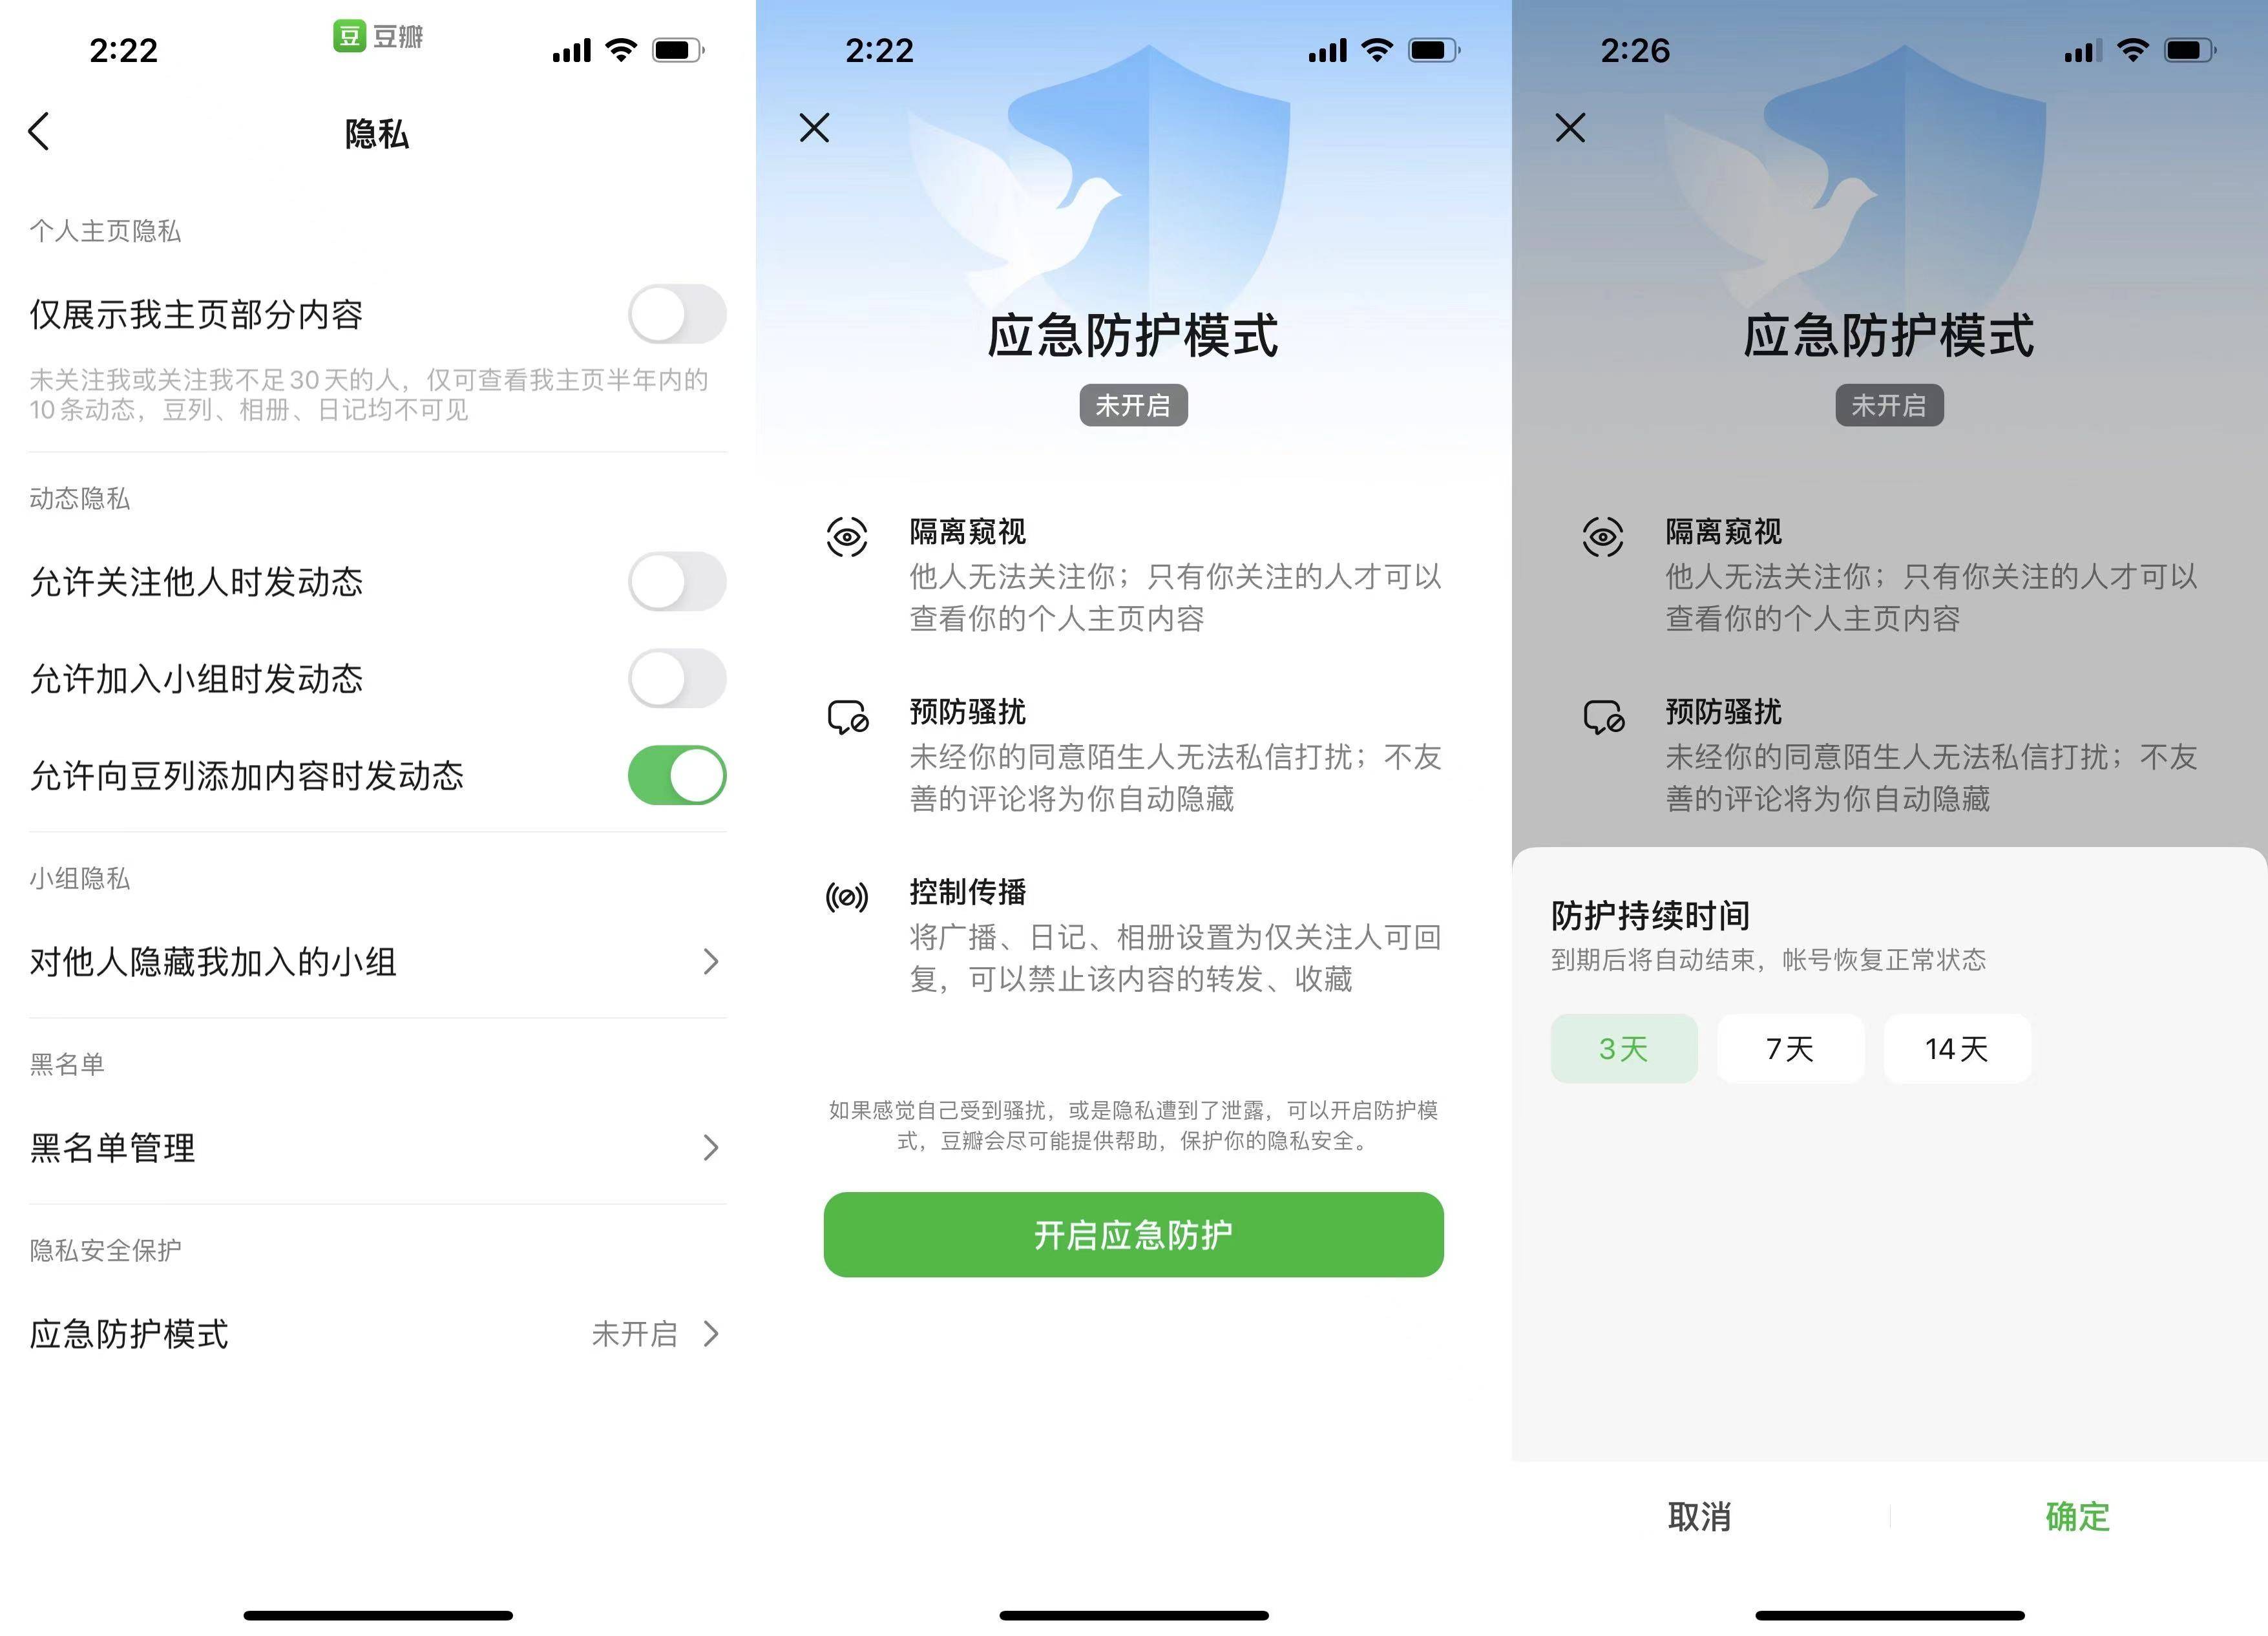 yingjifanghu - Le nuove funzioni che Weibo, Douban e Douyin stanno svolgendo finalmente rendono la cyber-violenza non più irrisolta